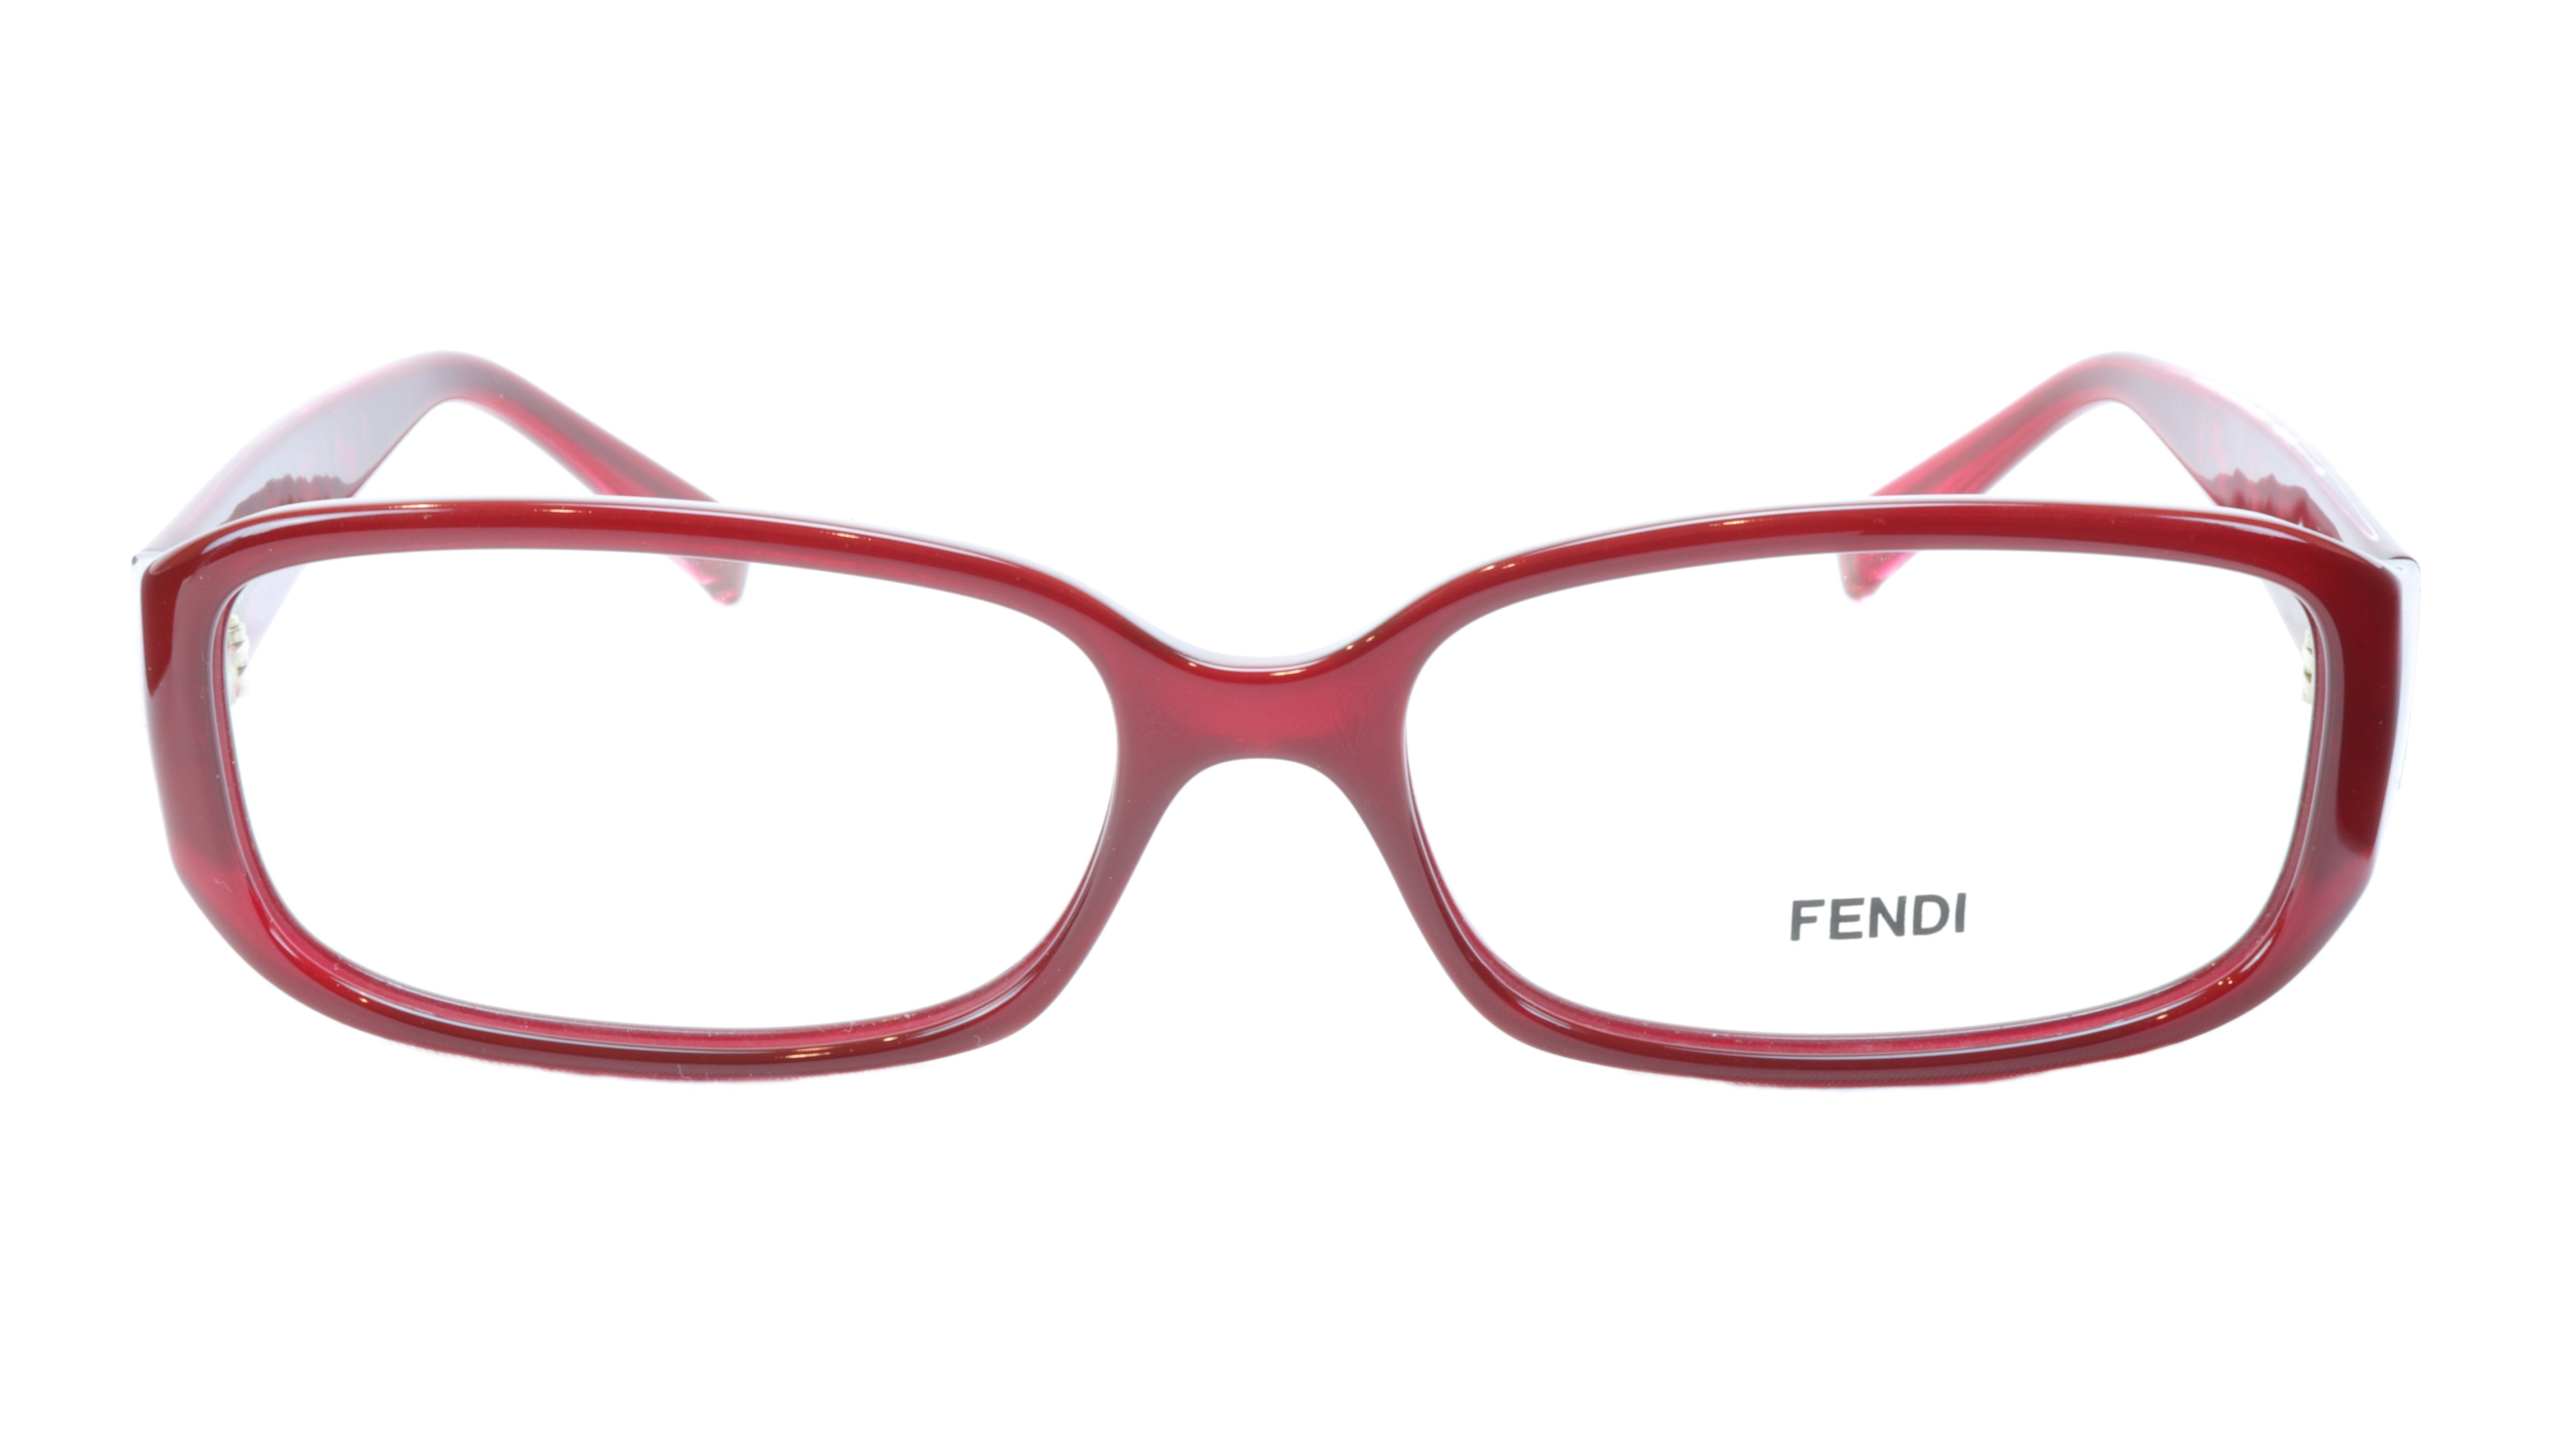 FENDI Eyeglasses Frame F983 (604) For Women Acetate Red Italy 53 